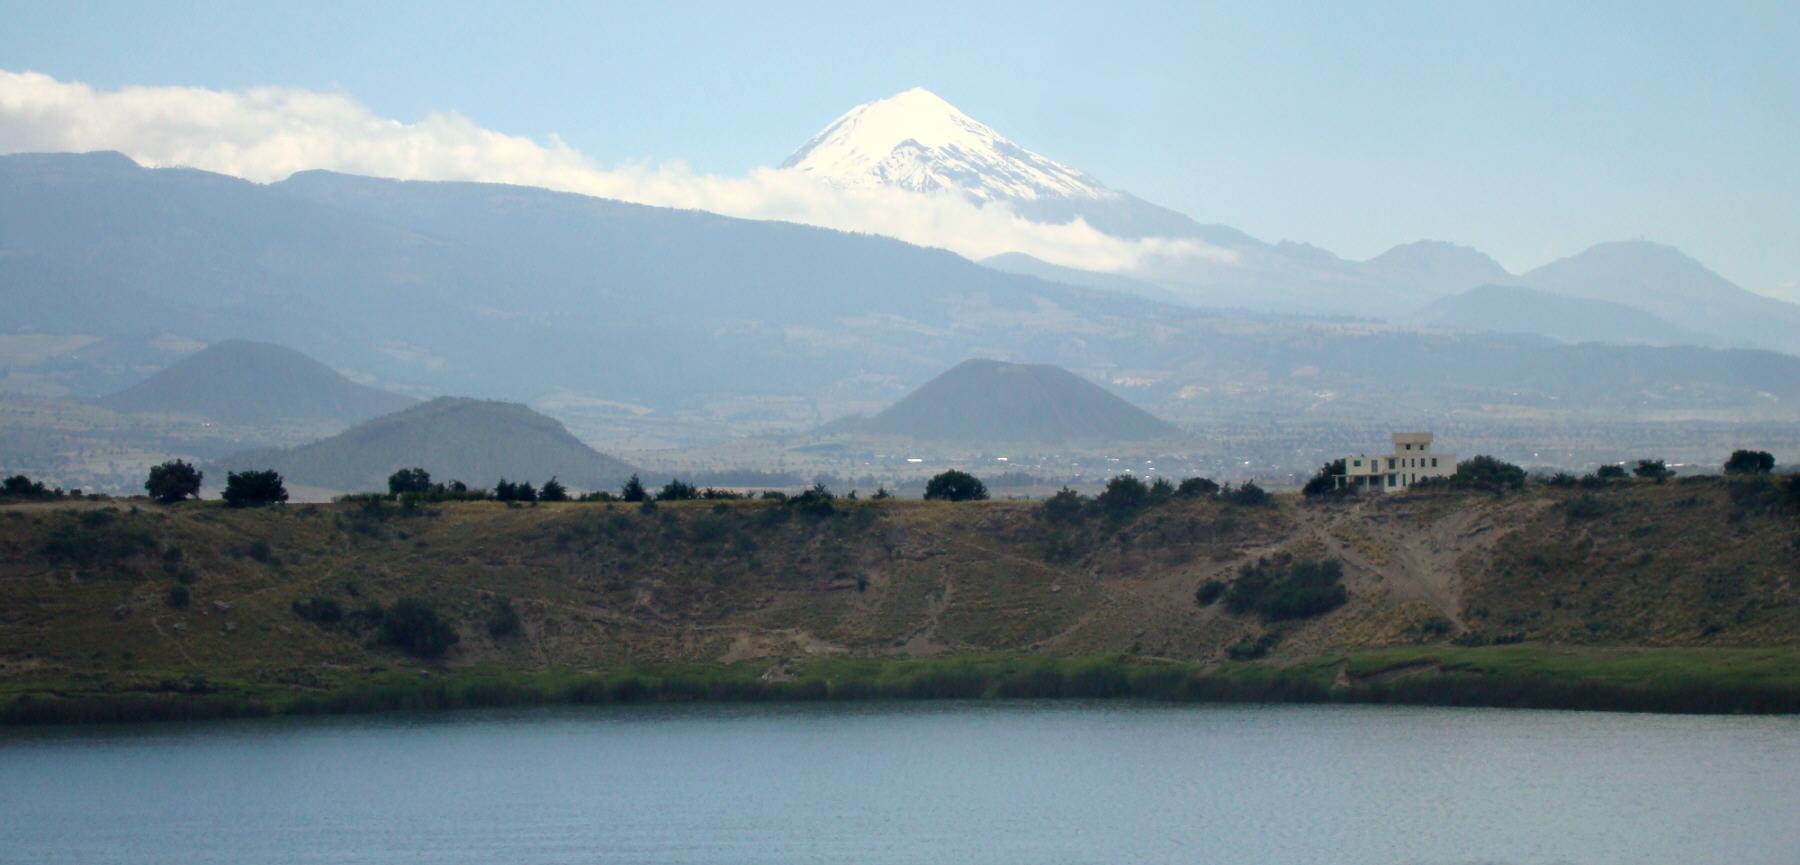 Paisaje desde Quechulac. Pico de Citlaltepetl